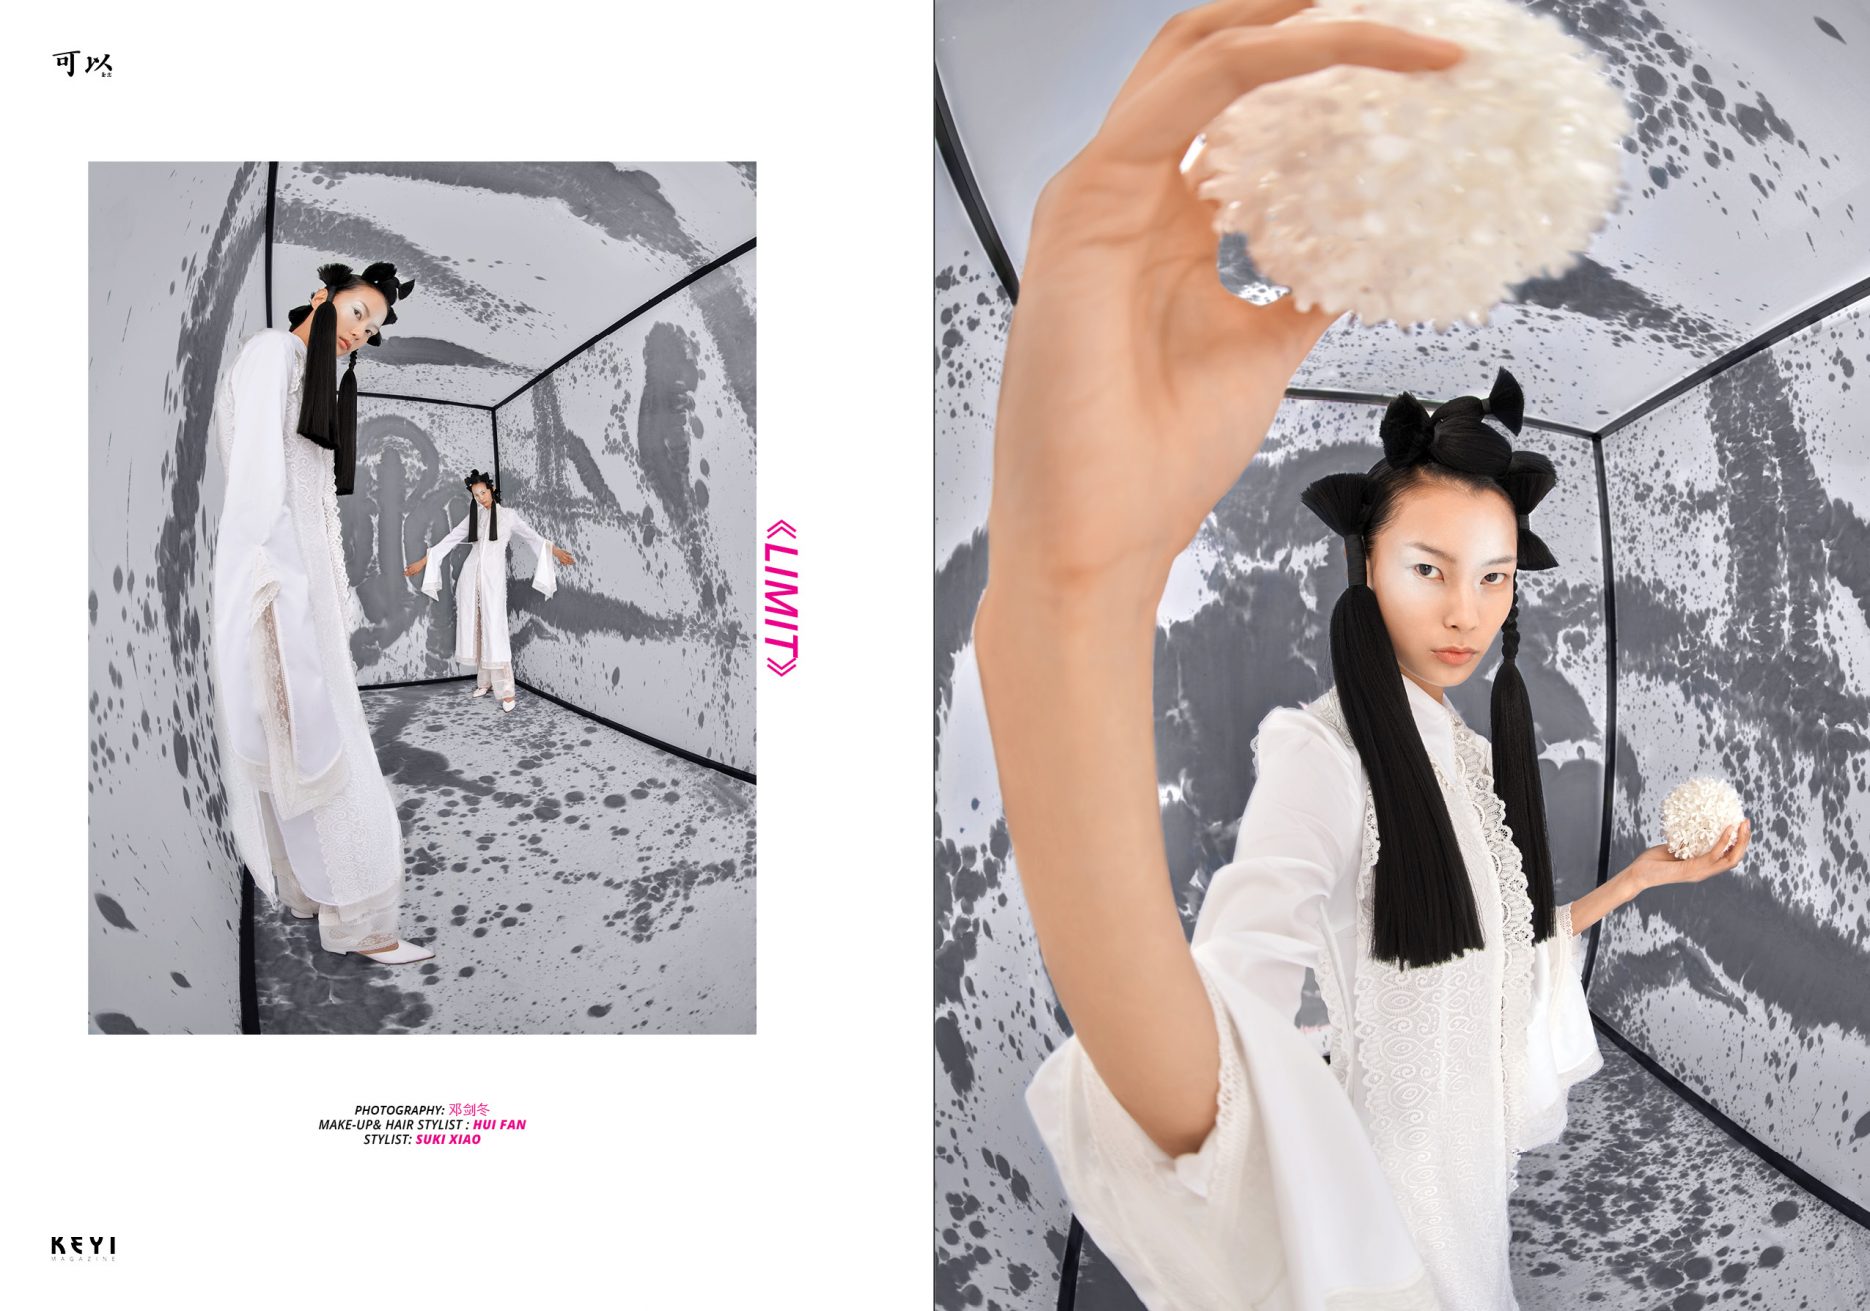 Editorial Keyi Magazine《Limit》by JianDong Deng with BoWen Guan. Make up by Hui Fan. Styling by Suki Xiao